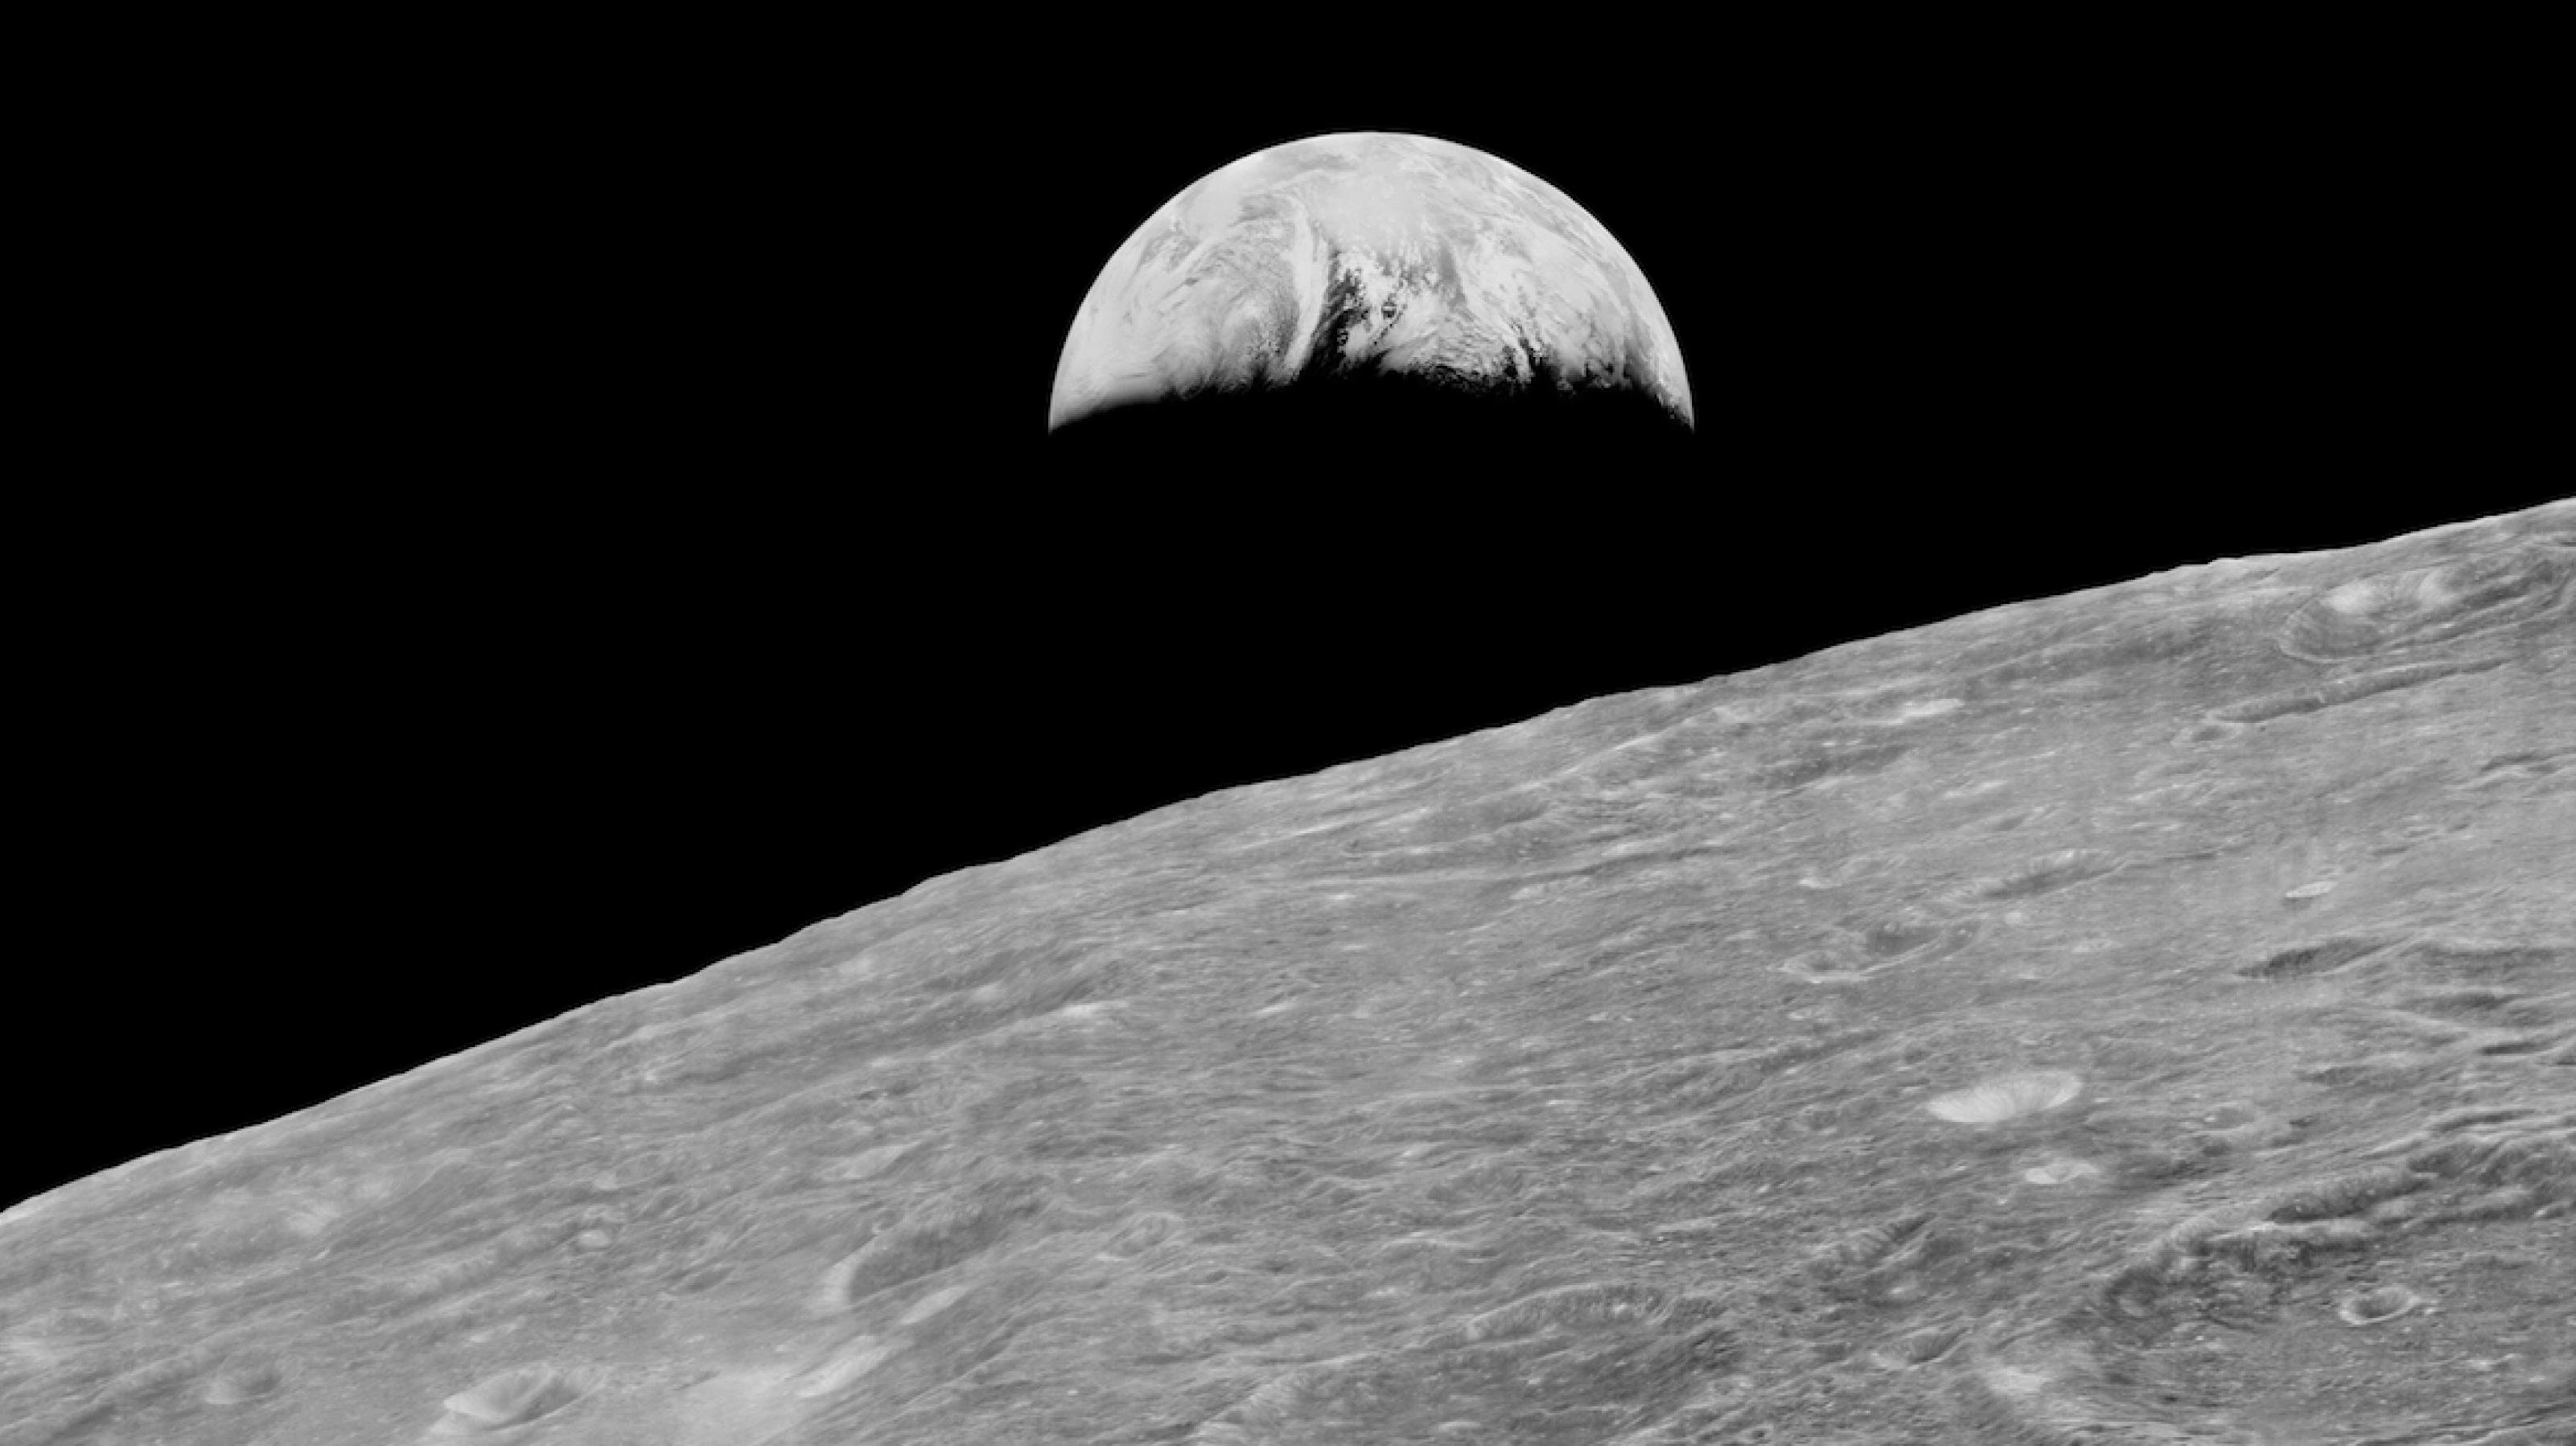 Schwarzweiß-Foto: Die angeschnittene Mondoberfläche, darüber die Erde mit gut erkennbaren Wolkenbändern. Es ist das erste Earth rise-Bild, aufgenommen vom Lunar Orbiter 1 der NASA im August 1966.